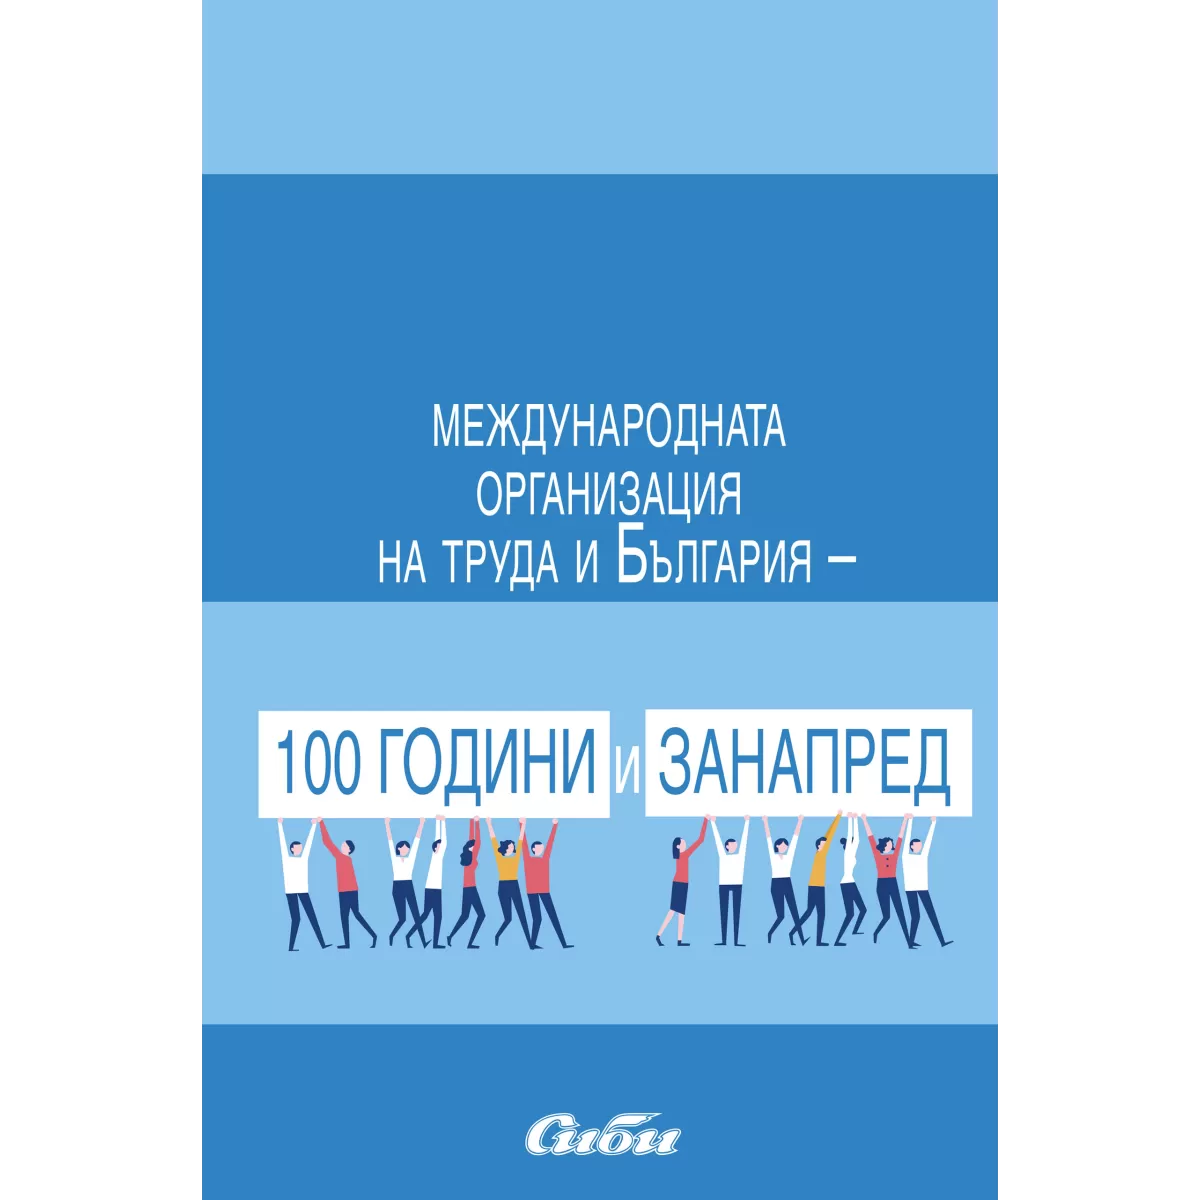 Mеждународната организация на труда и България – 100 години и занапред